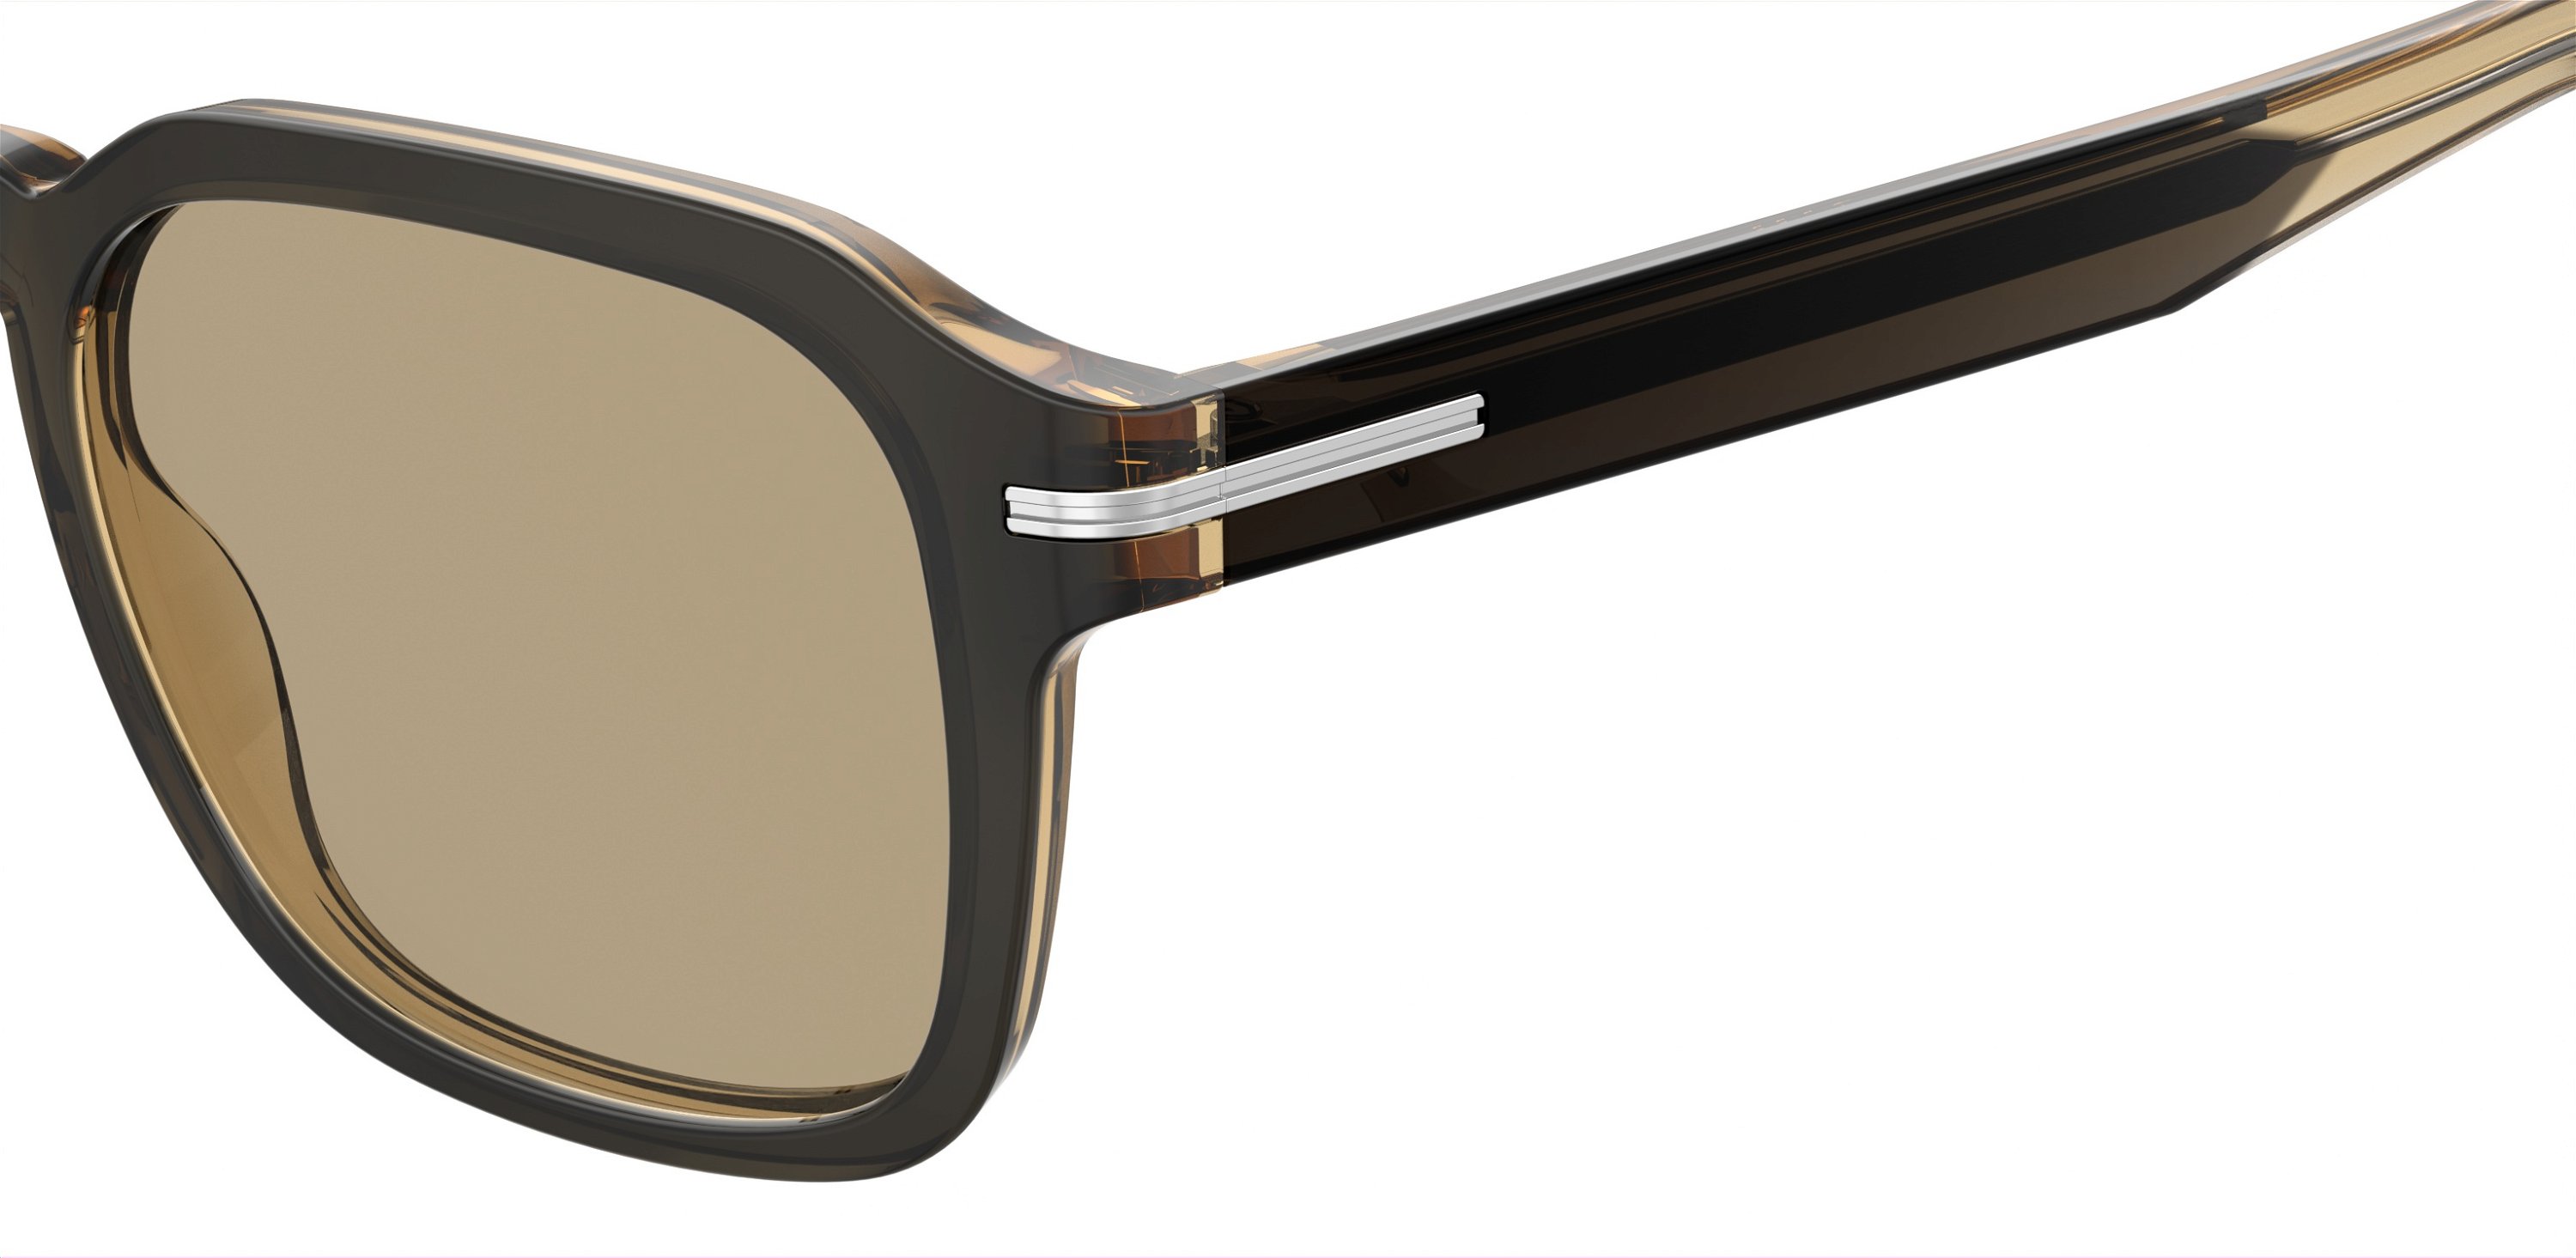 Das Bild zeigt die Sonnenbrille BOSS1627S S05 von der Marke BOSS in Grau/Braun.